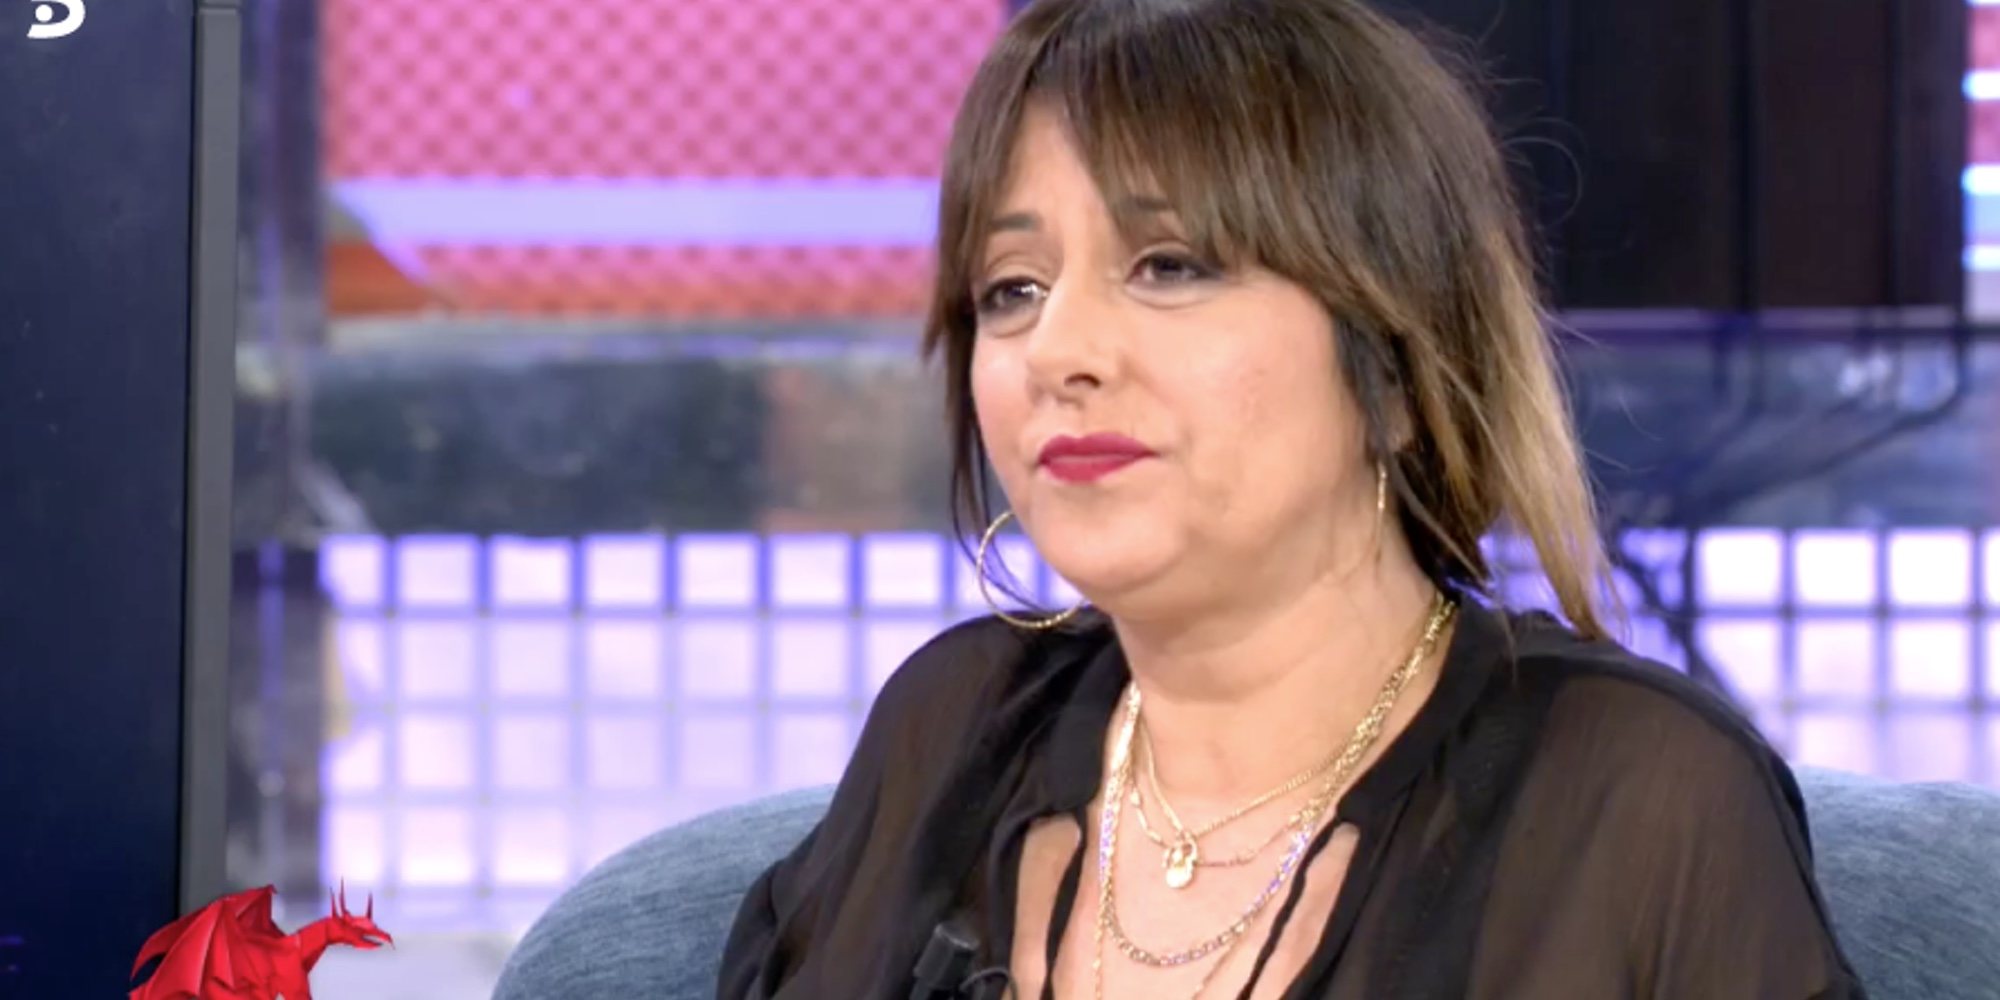 Yolanda Ramos recuerda su zasca a José Luis Moreno: "Me cagué encima, me arrepentí al llegar a casa"